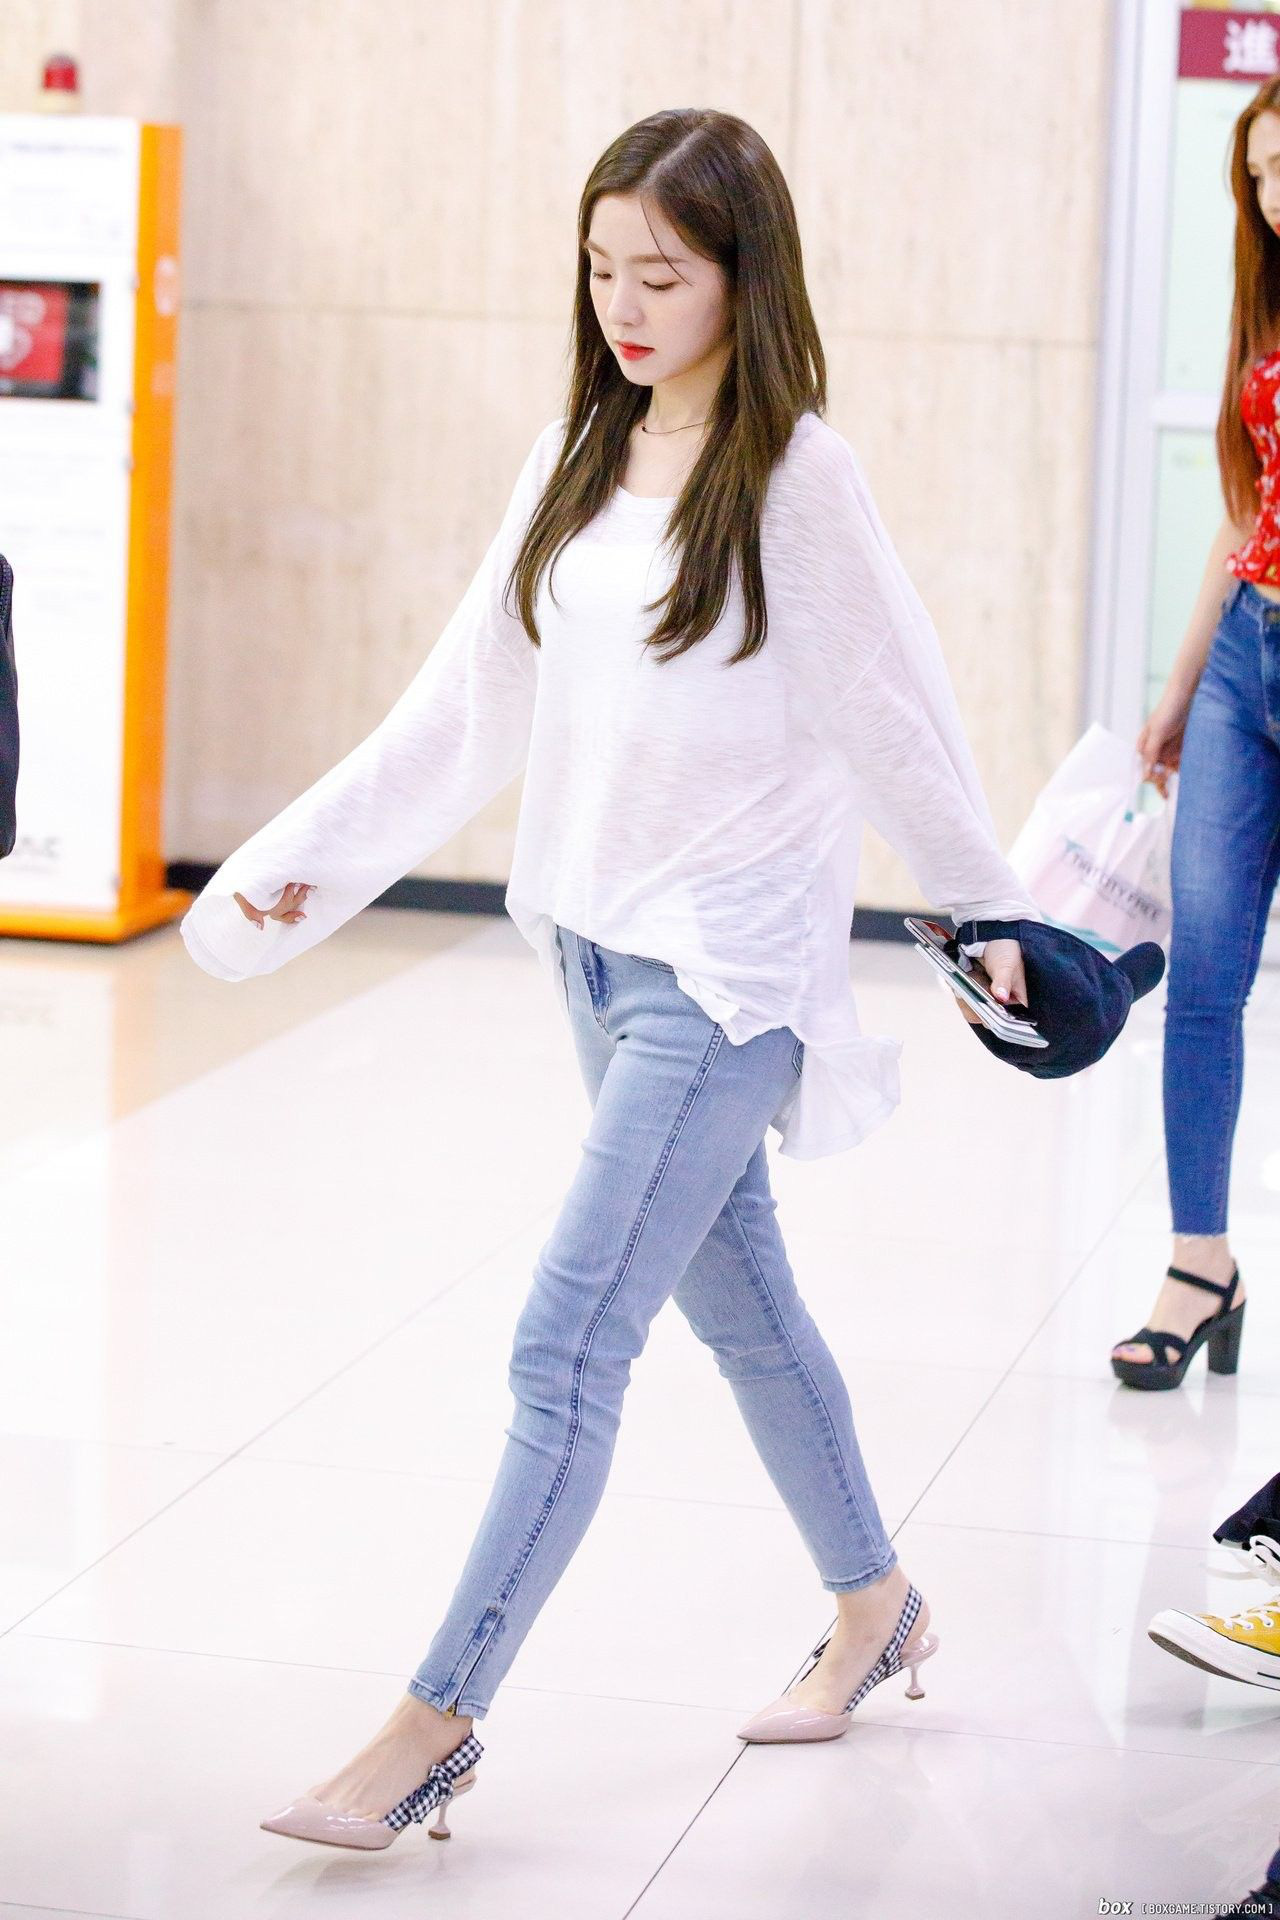 Chân ngắn có tiếng nhưng Irene (Red Velvet) không thiếu những lần hack chân thon dài hơn nhờ một mẫu giày tủ - Ảnh 4.